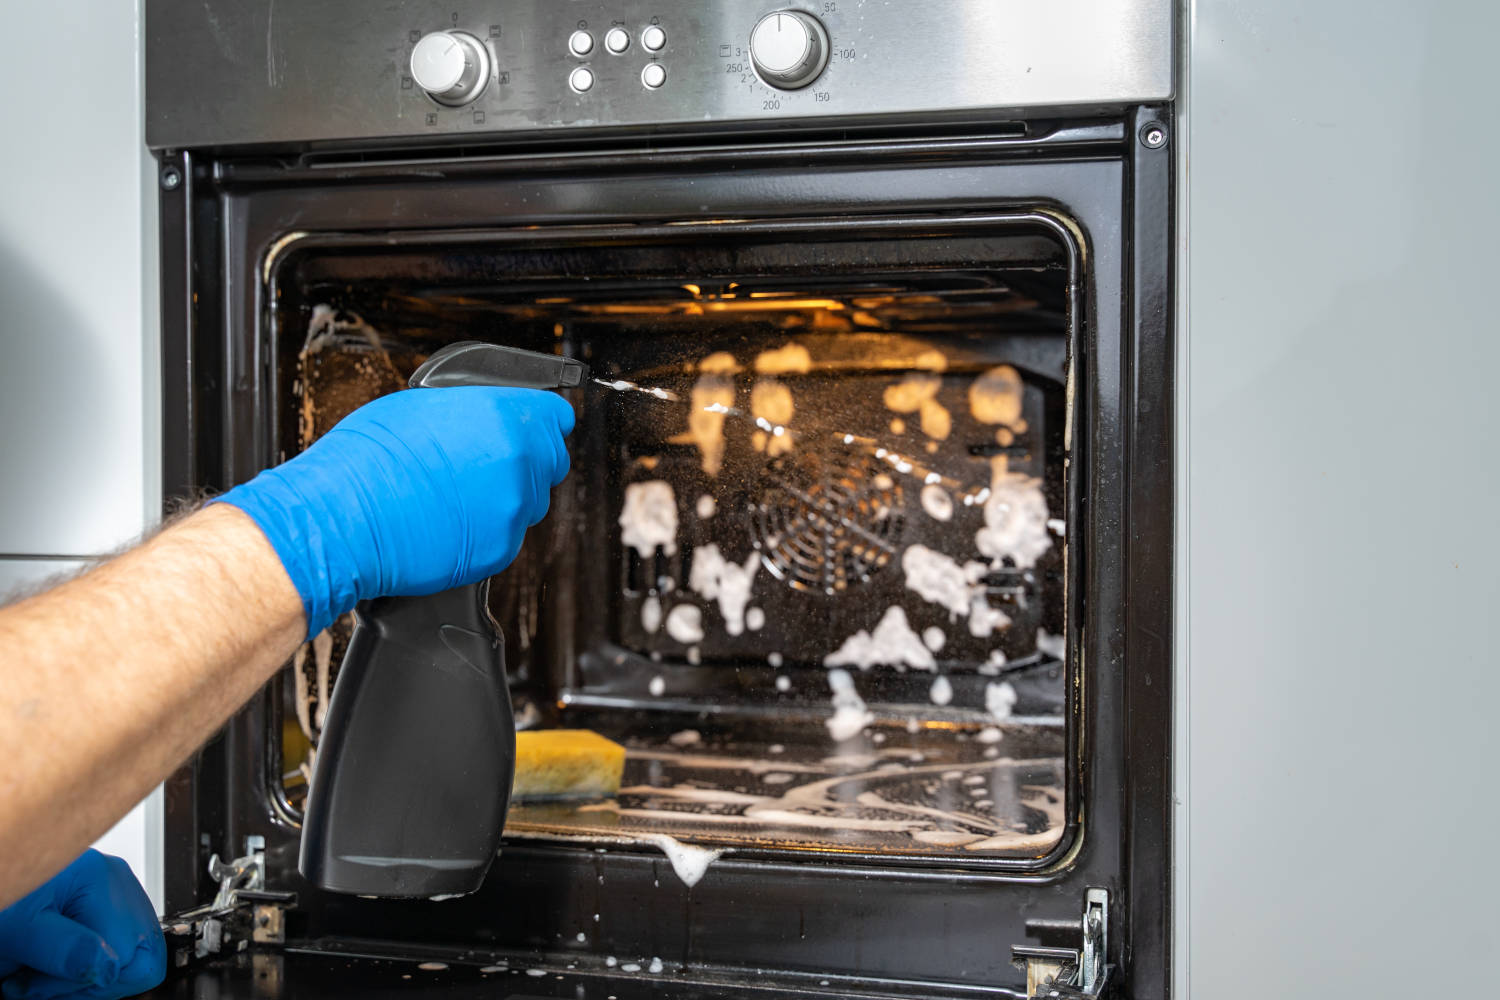 I migliori consigli per una pulizia profonda del forno